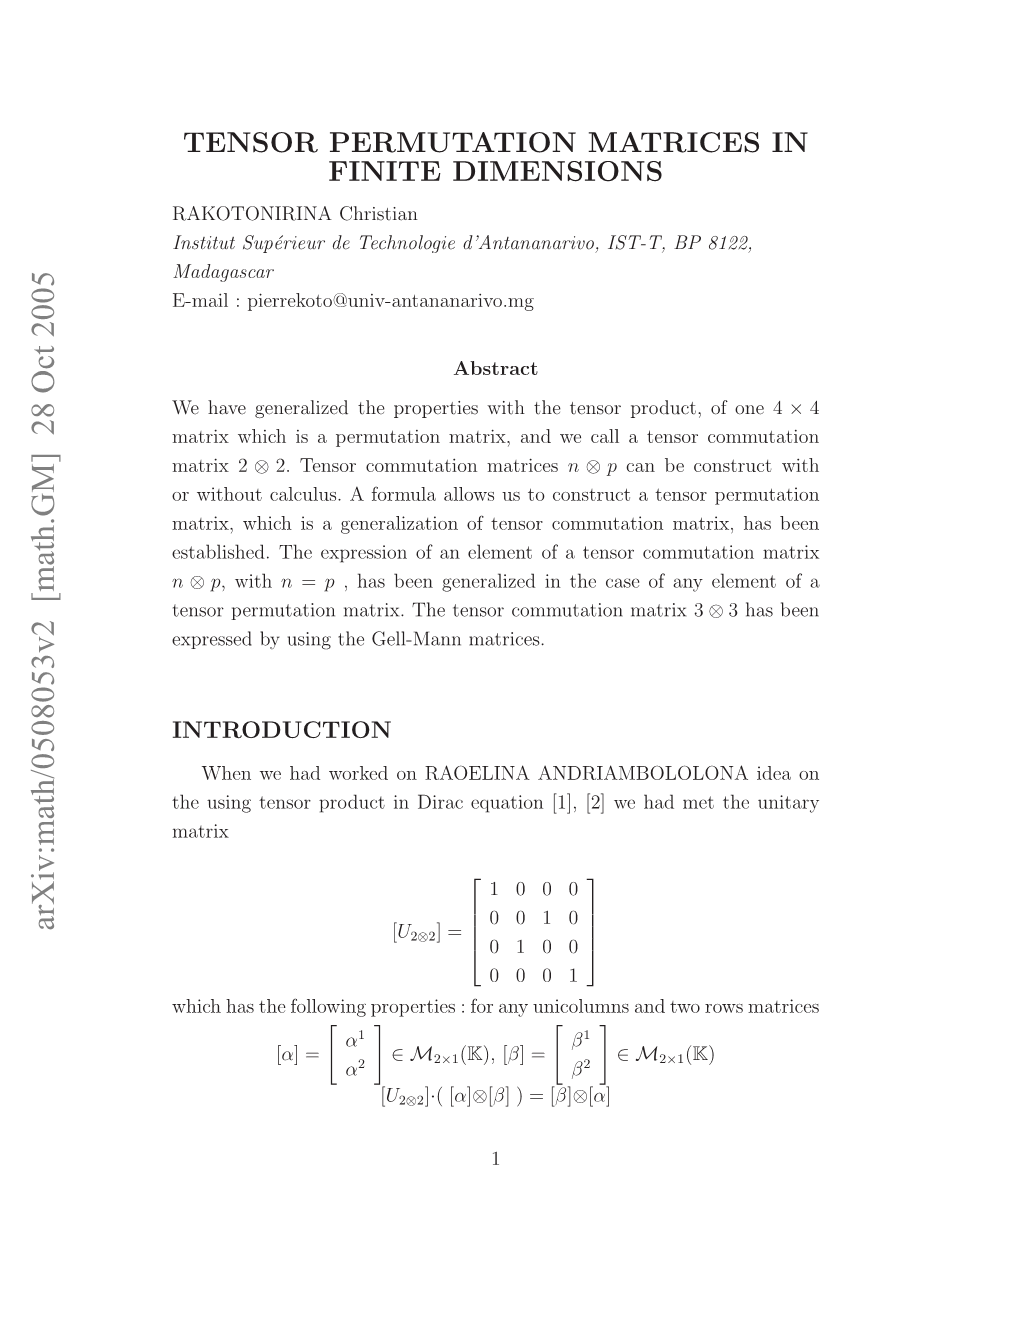 Tensor Permutation Matrices in Finite Dimensions